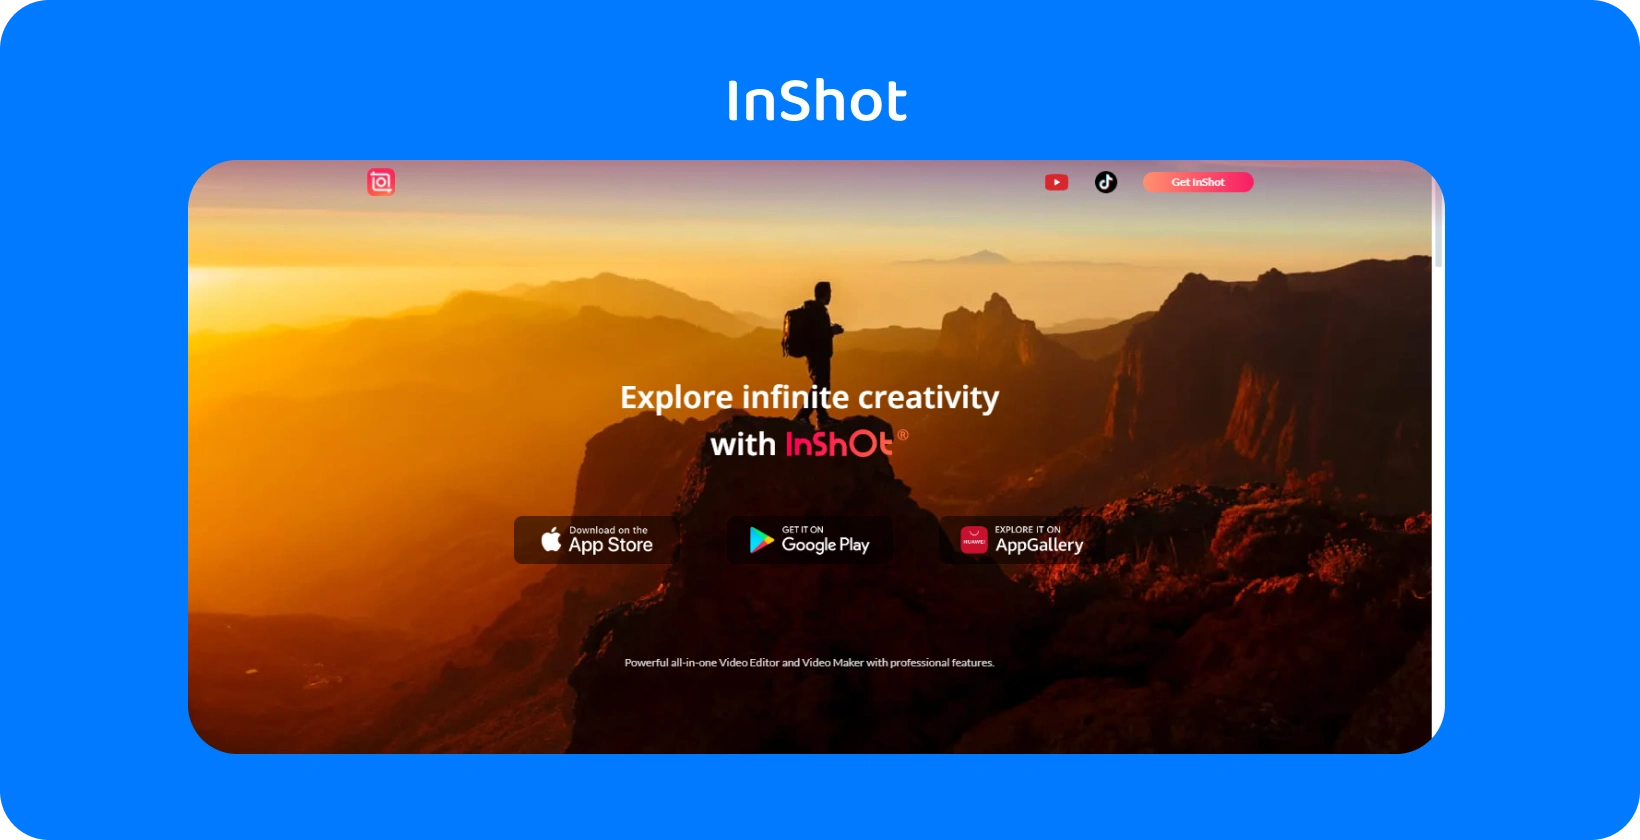 InShot إعلان التطبيق الذي يضم متنزها عند غروب الشمس ، يرمز إلى وعد التطبيق باستكشاف الإبداع اللانهائي في تحرير الفيديو.
